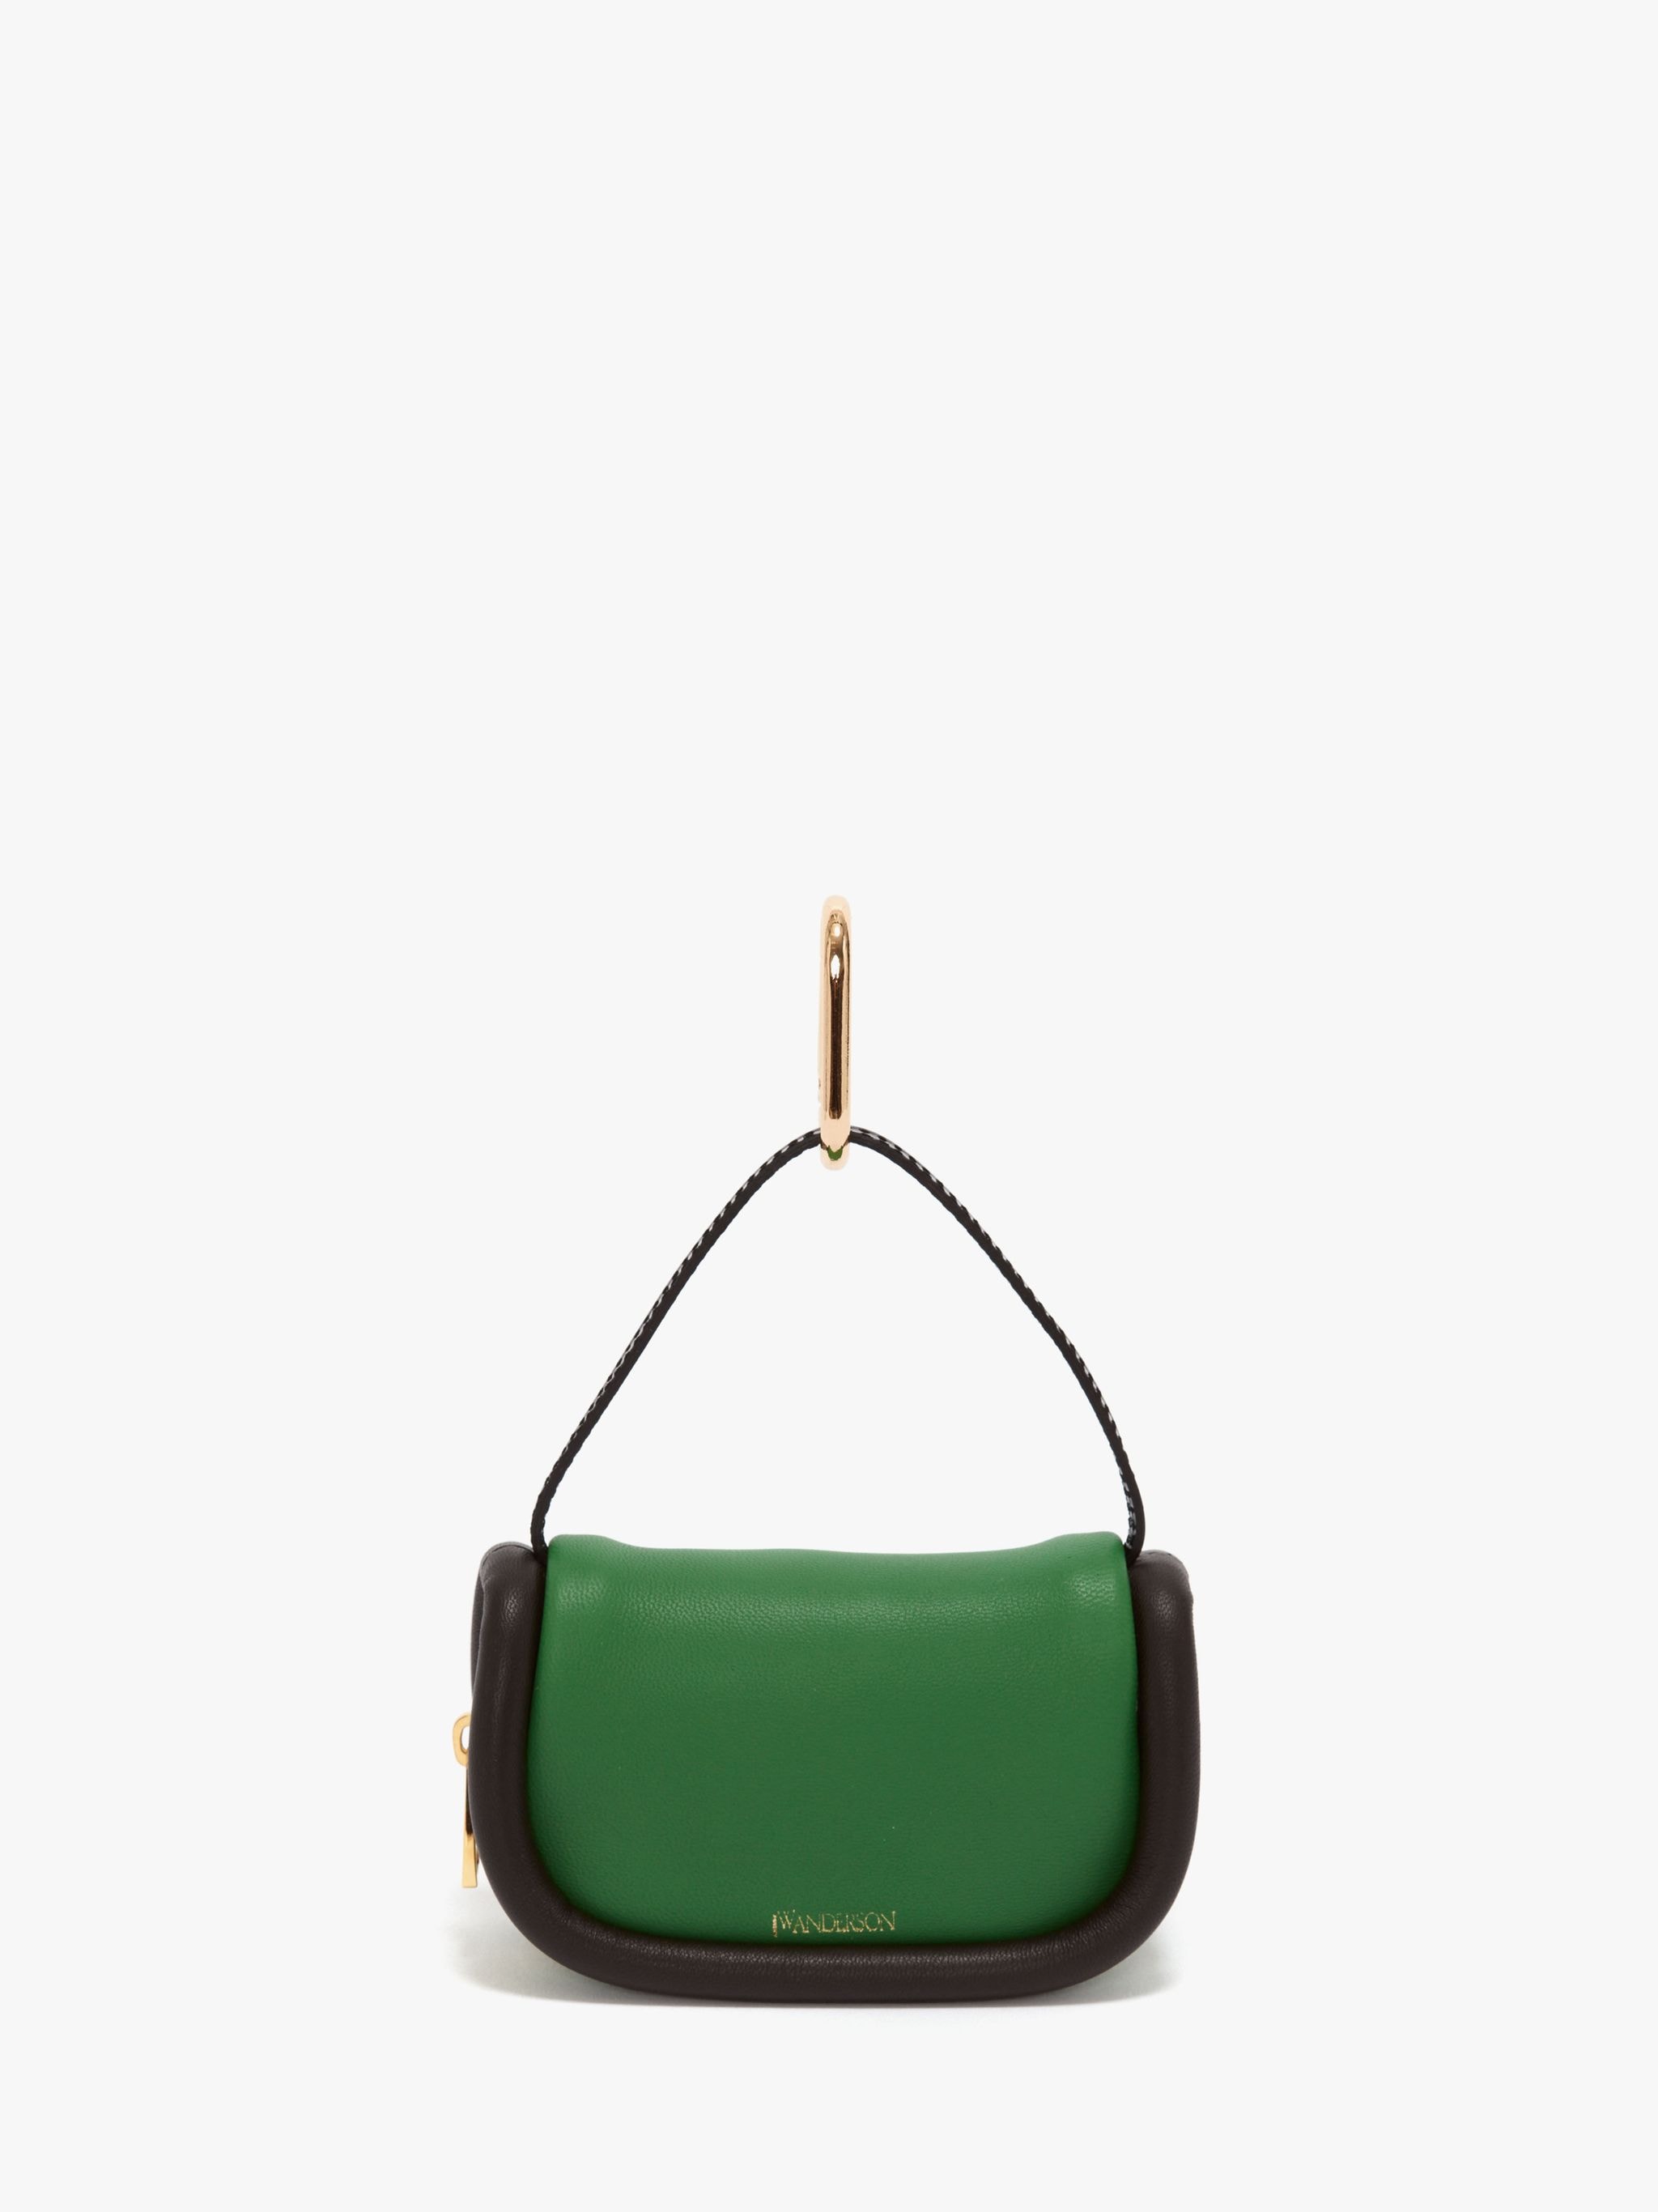 Кожаная сумка JW Anderson, зеленый / коричневый / черный кожаная сумка jw anderson зеленый мокка черный